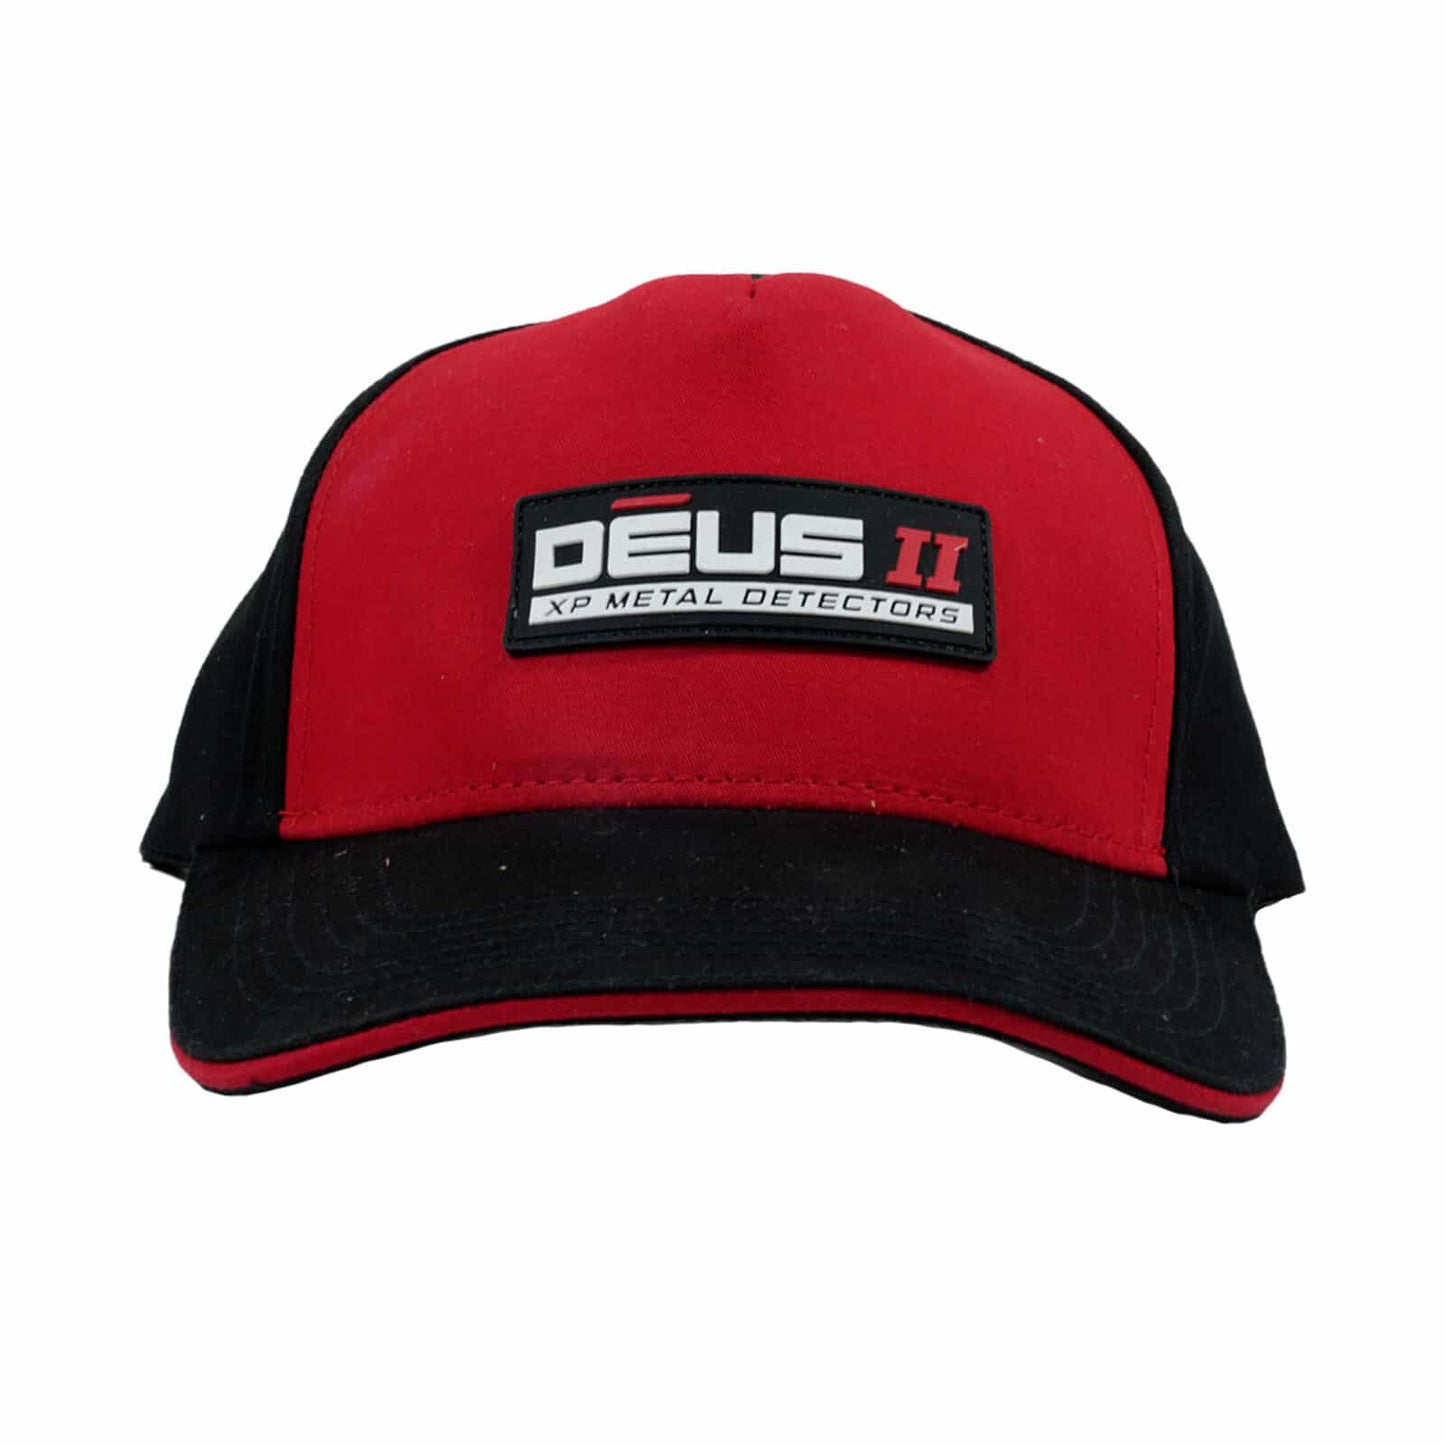 DEUS II cap Black and Red